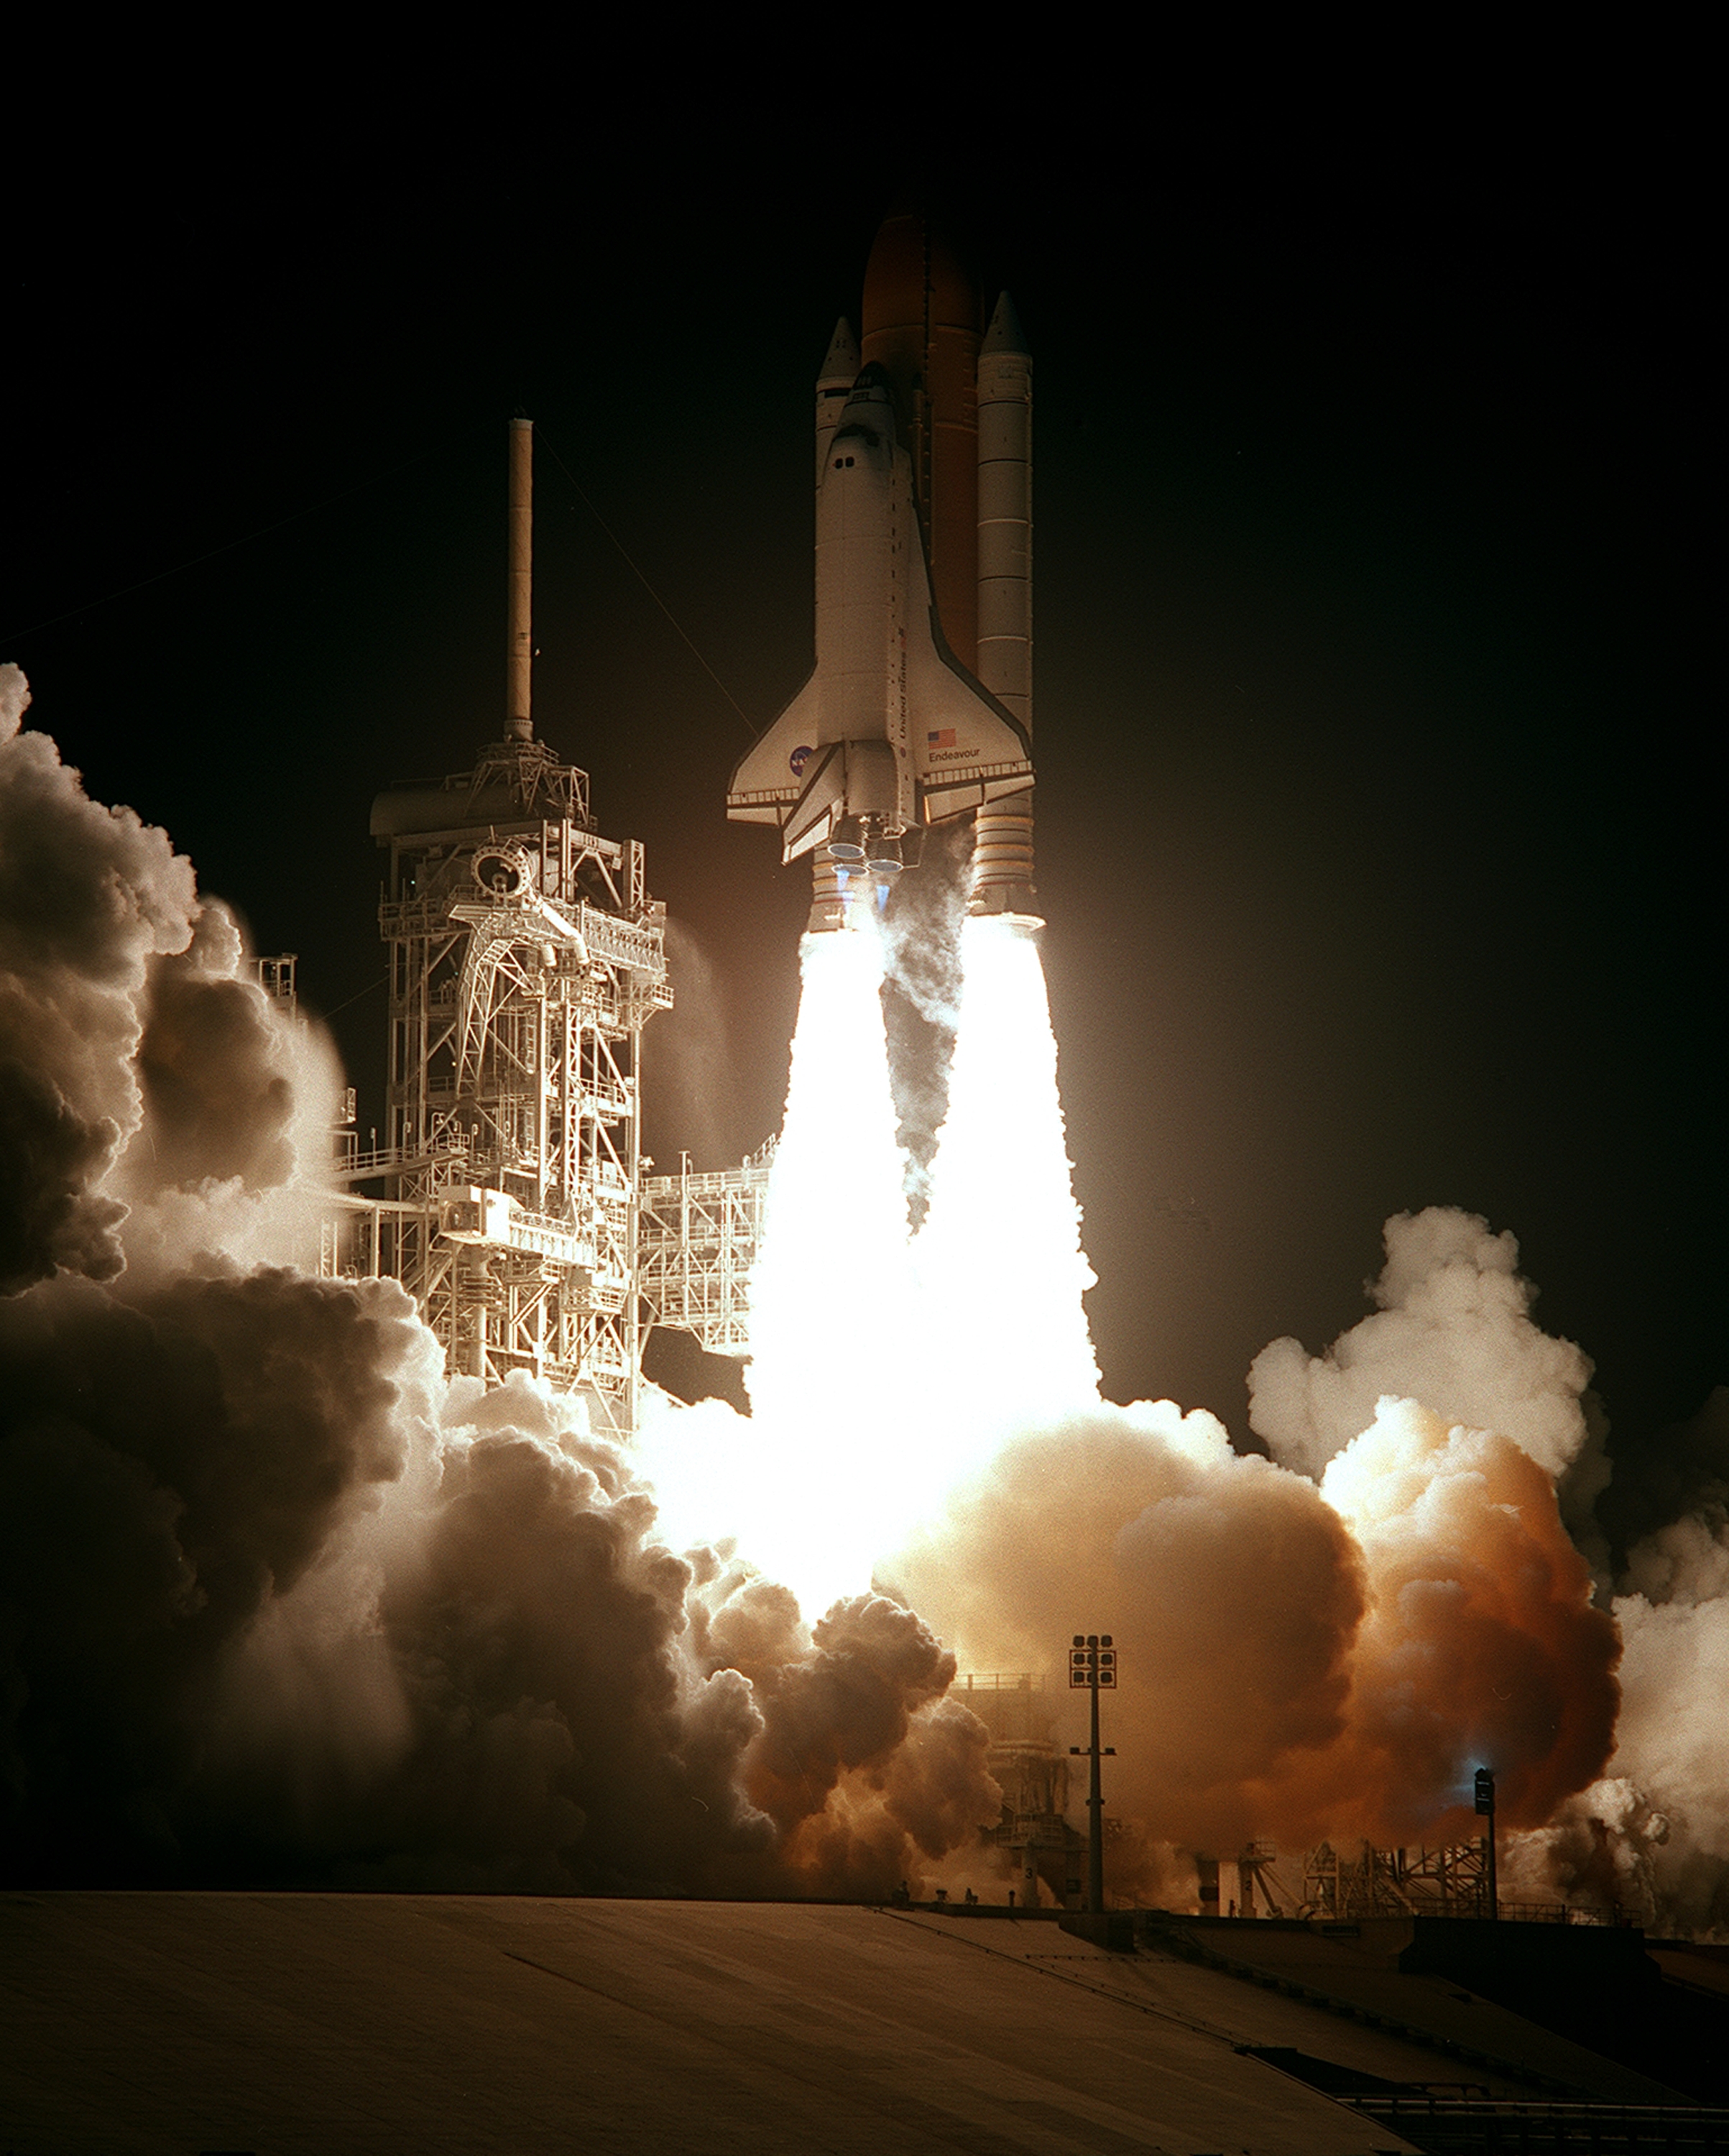 25 Years Ago: NASA, Partners Begin Space Station Assembly – NASA